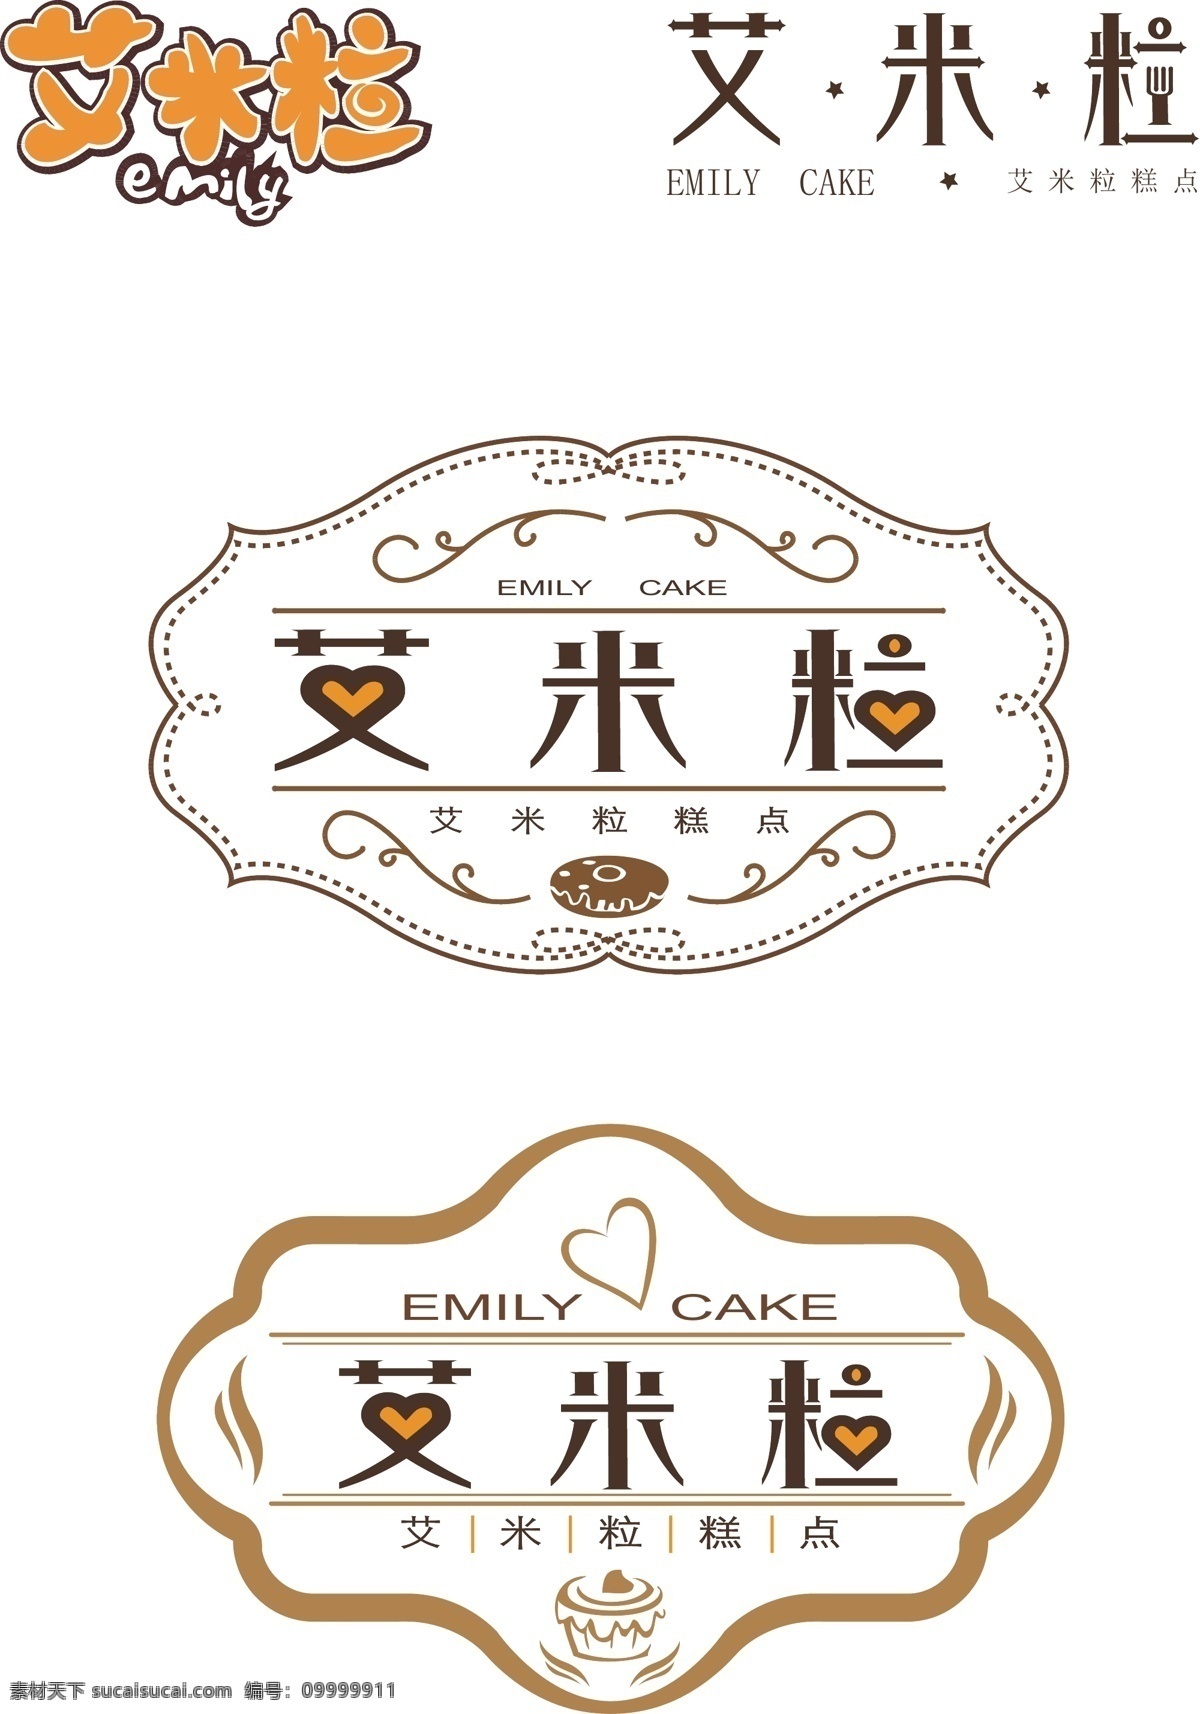 艾米粒 标志设计 矢量图 蛋糕工坊标志 标志 字体设计 标志图标 企业 logo